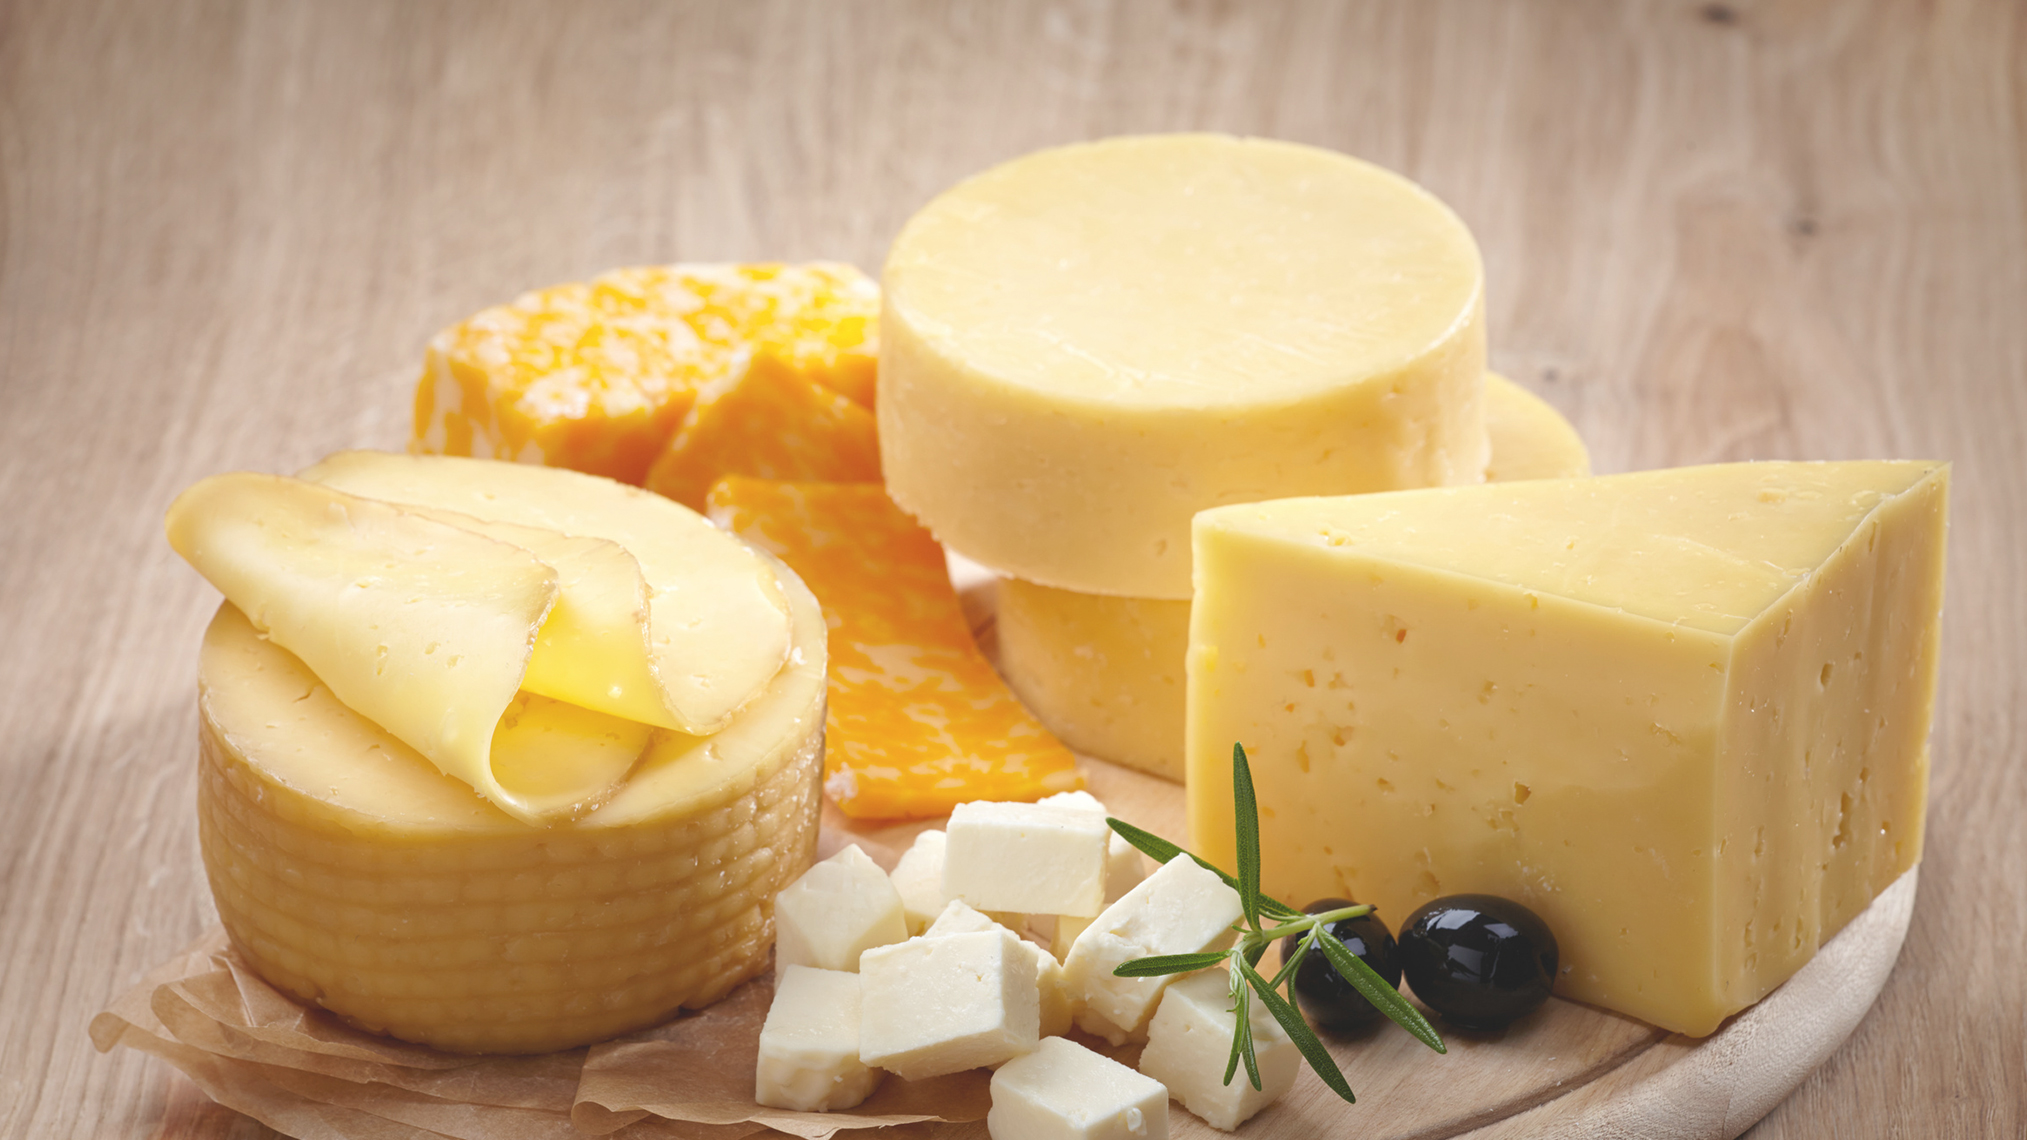 Vielfältige Auswahl an Käsesorten auf einer Platte